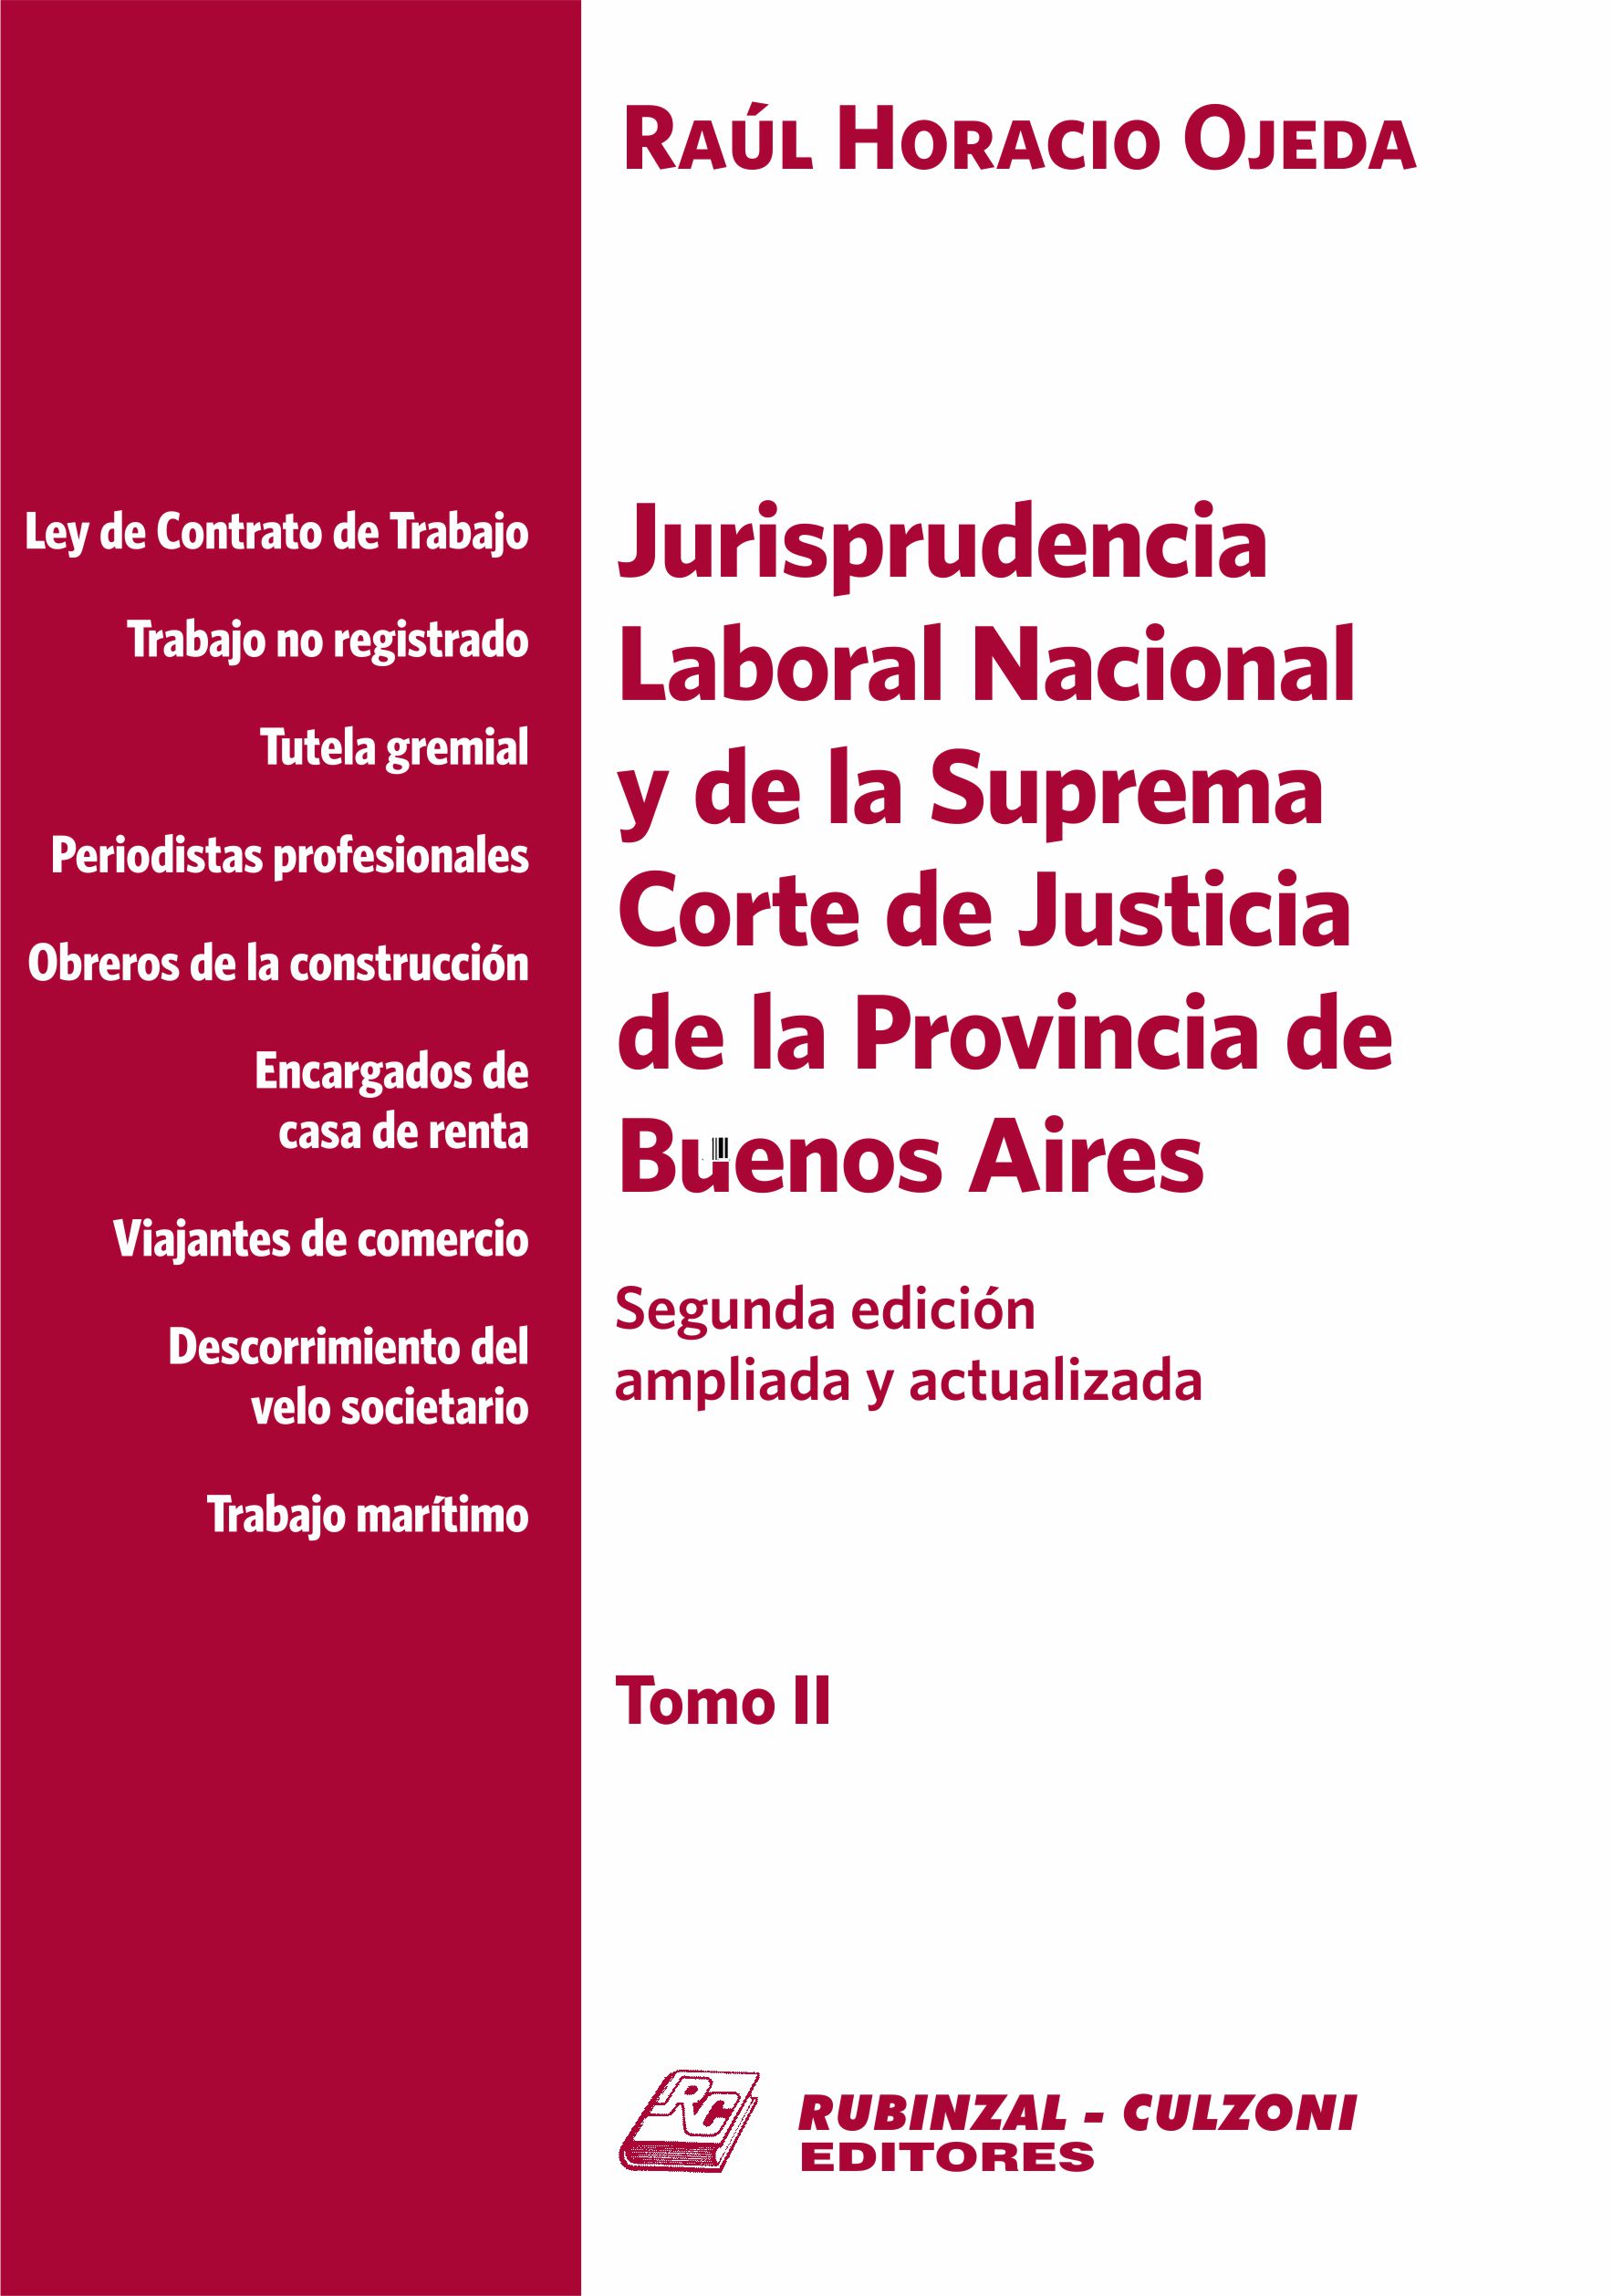 Jurisprudencia Laboral Nacional y de la Suprema Corte de Justicia de la Provincia de Buenos Aires - Tomo II